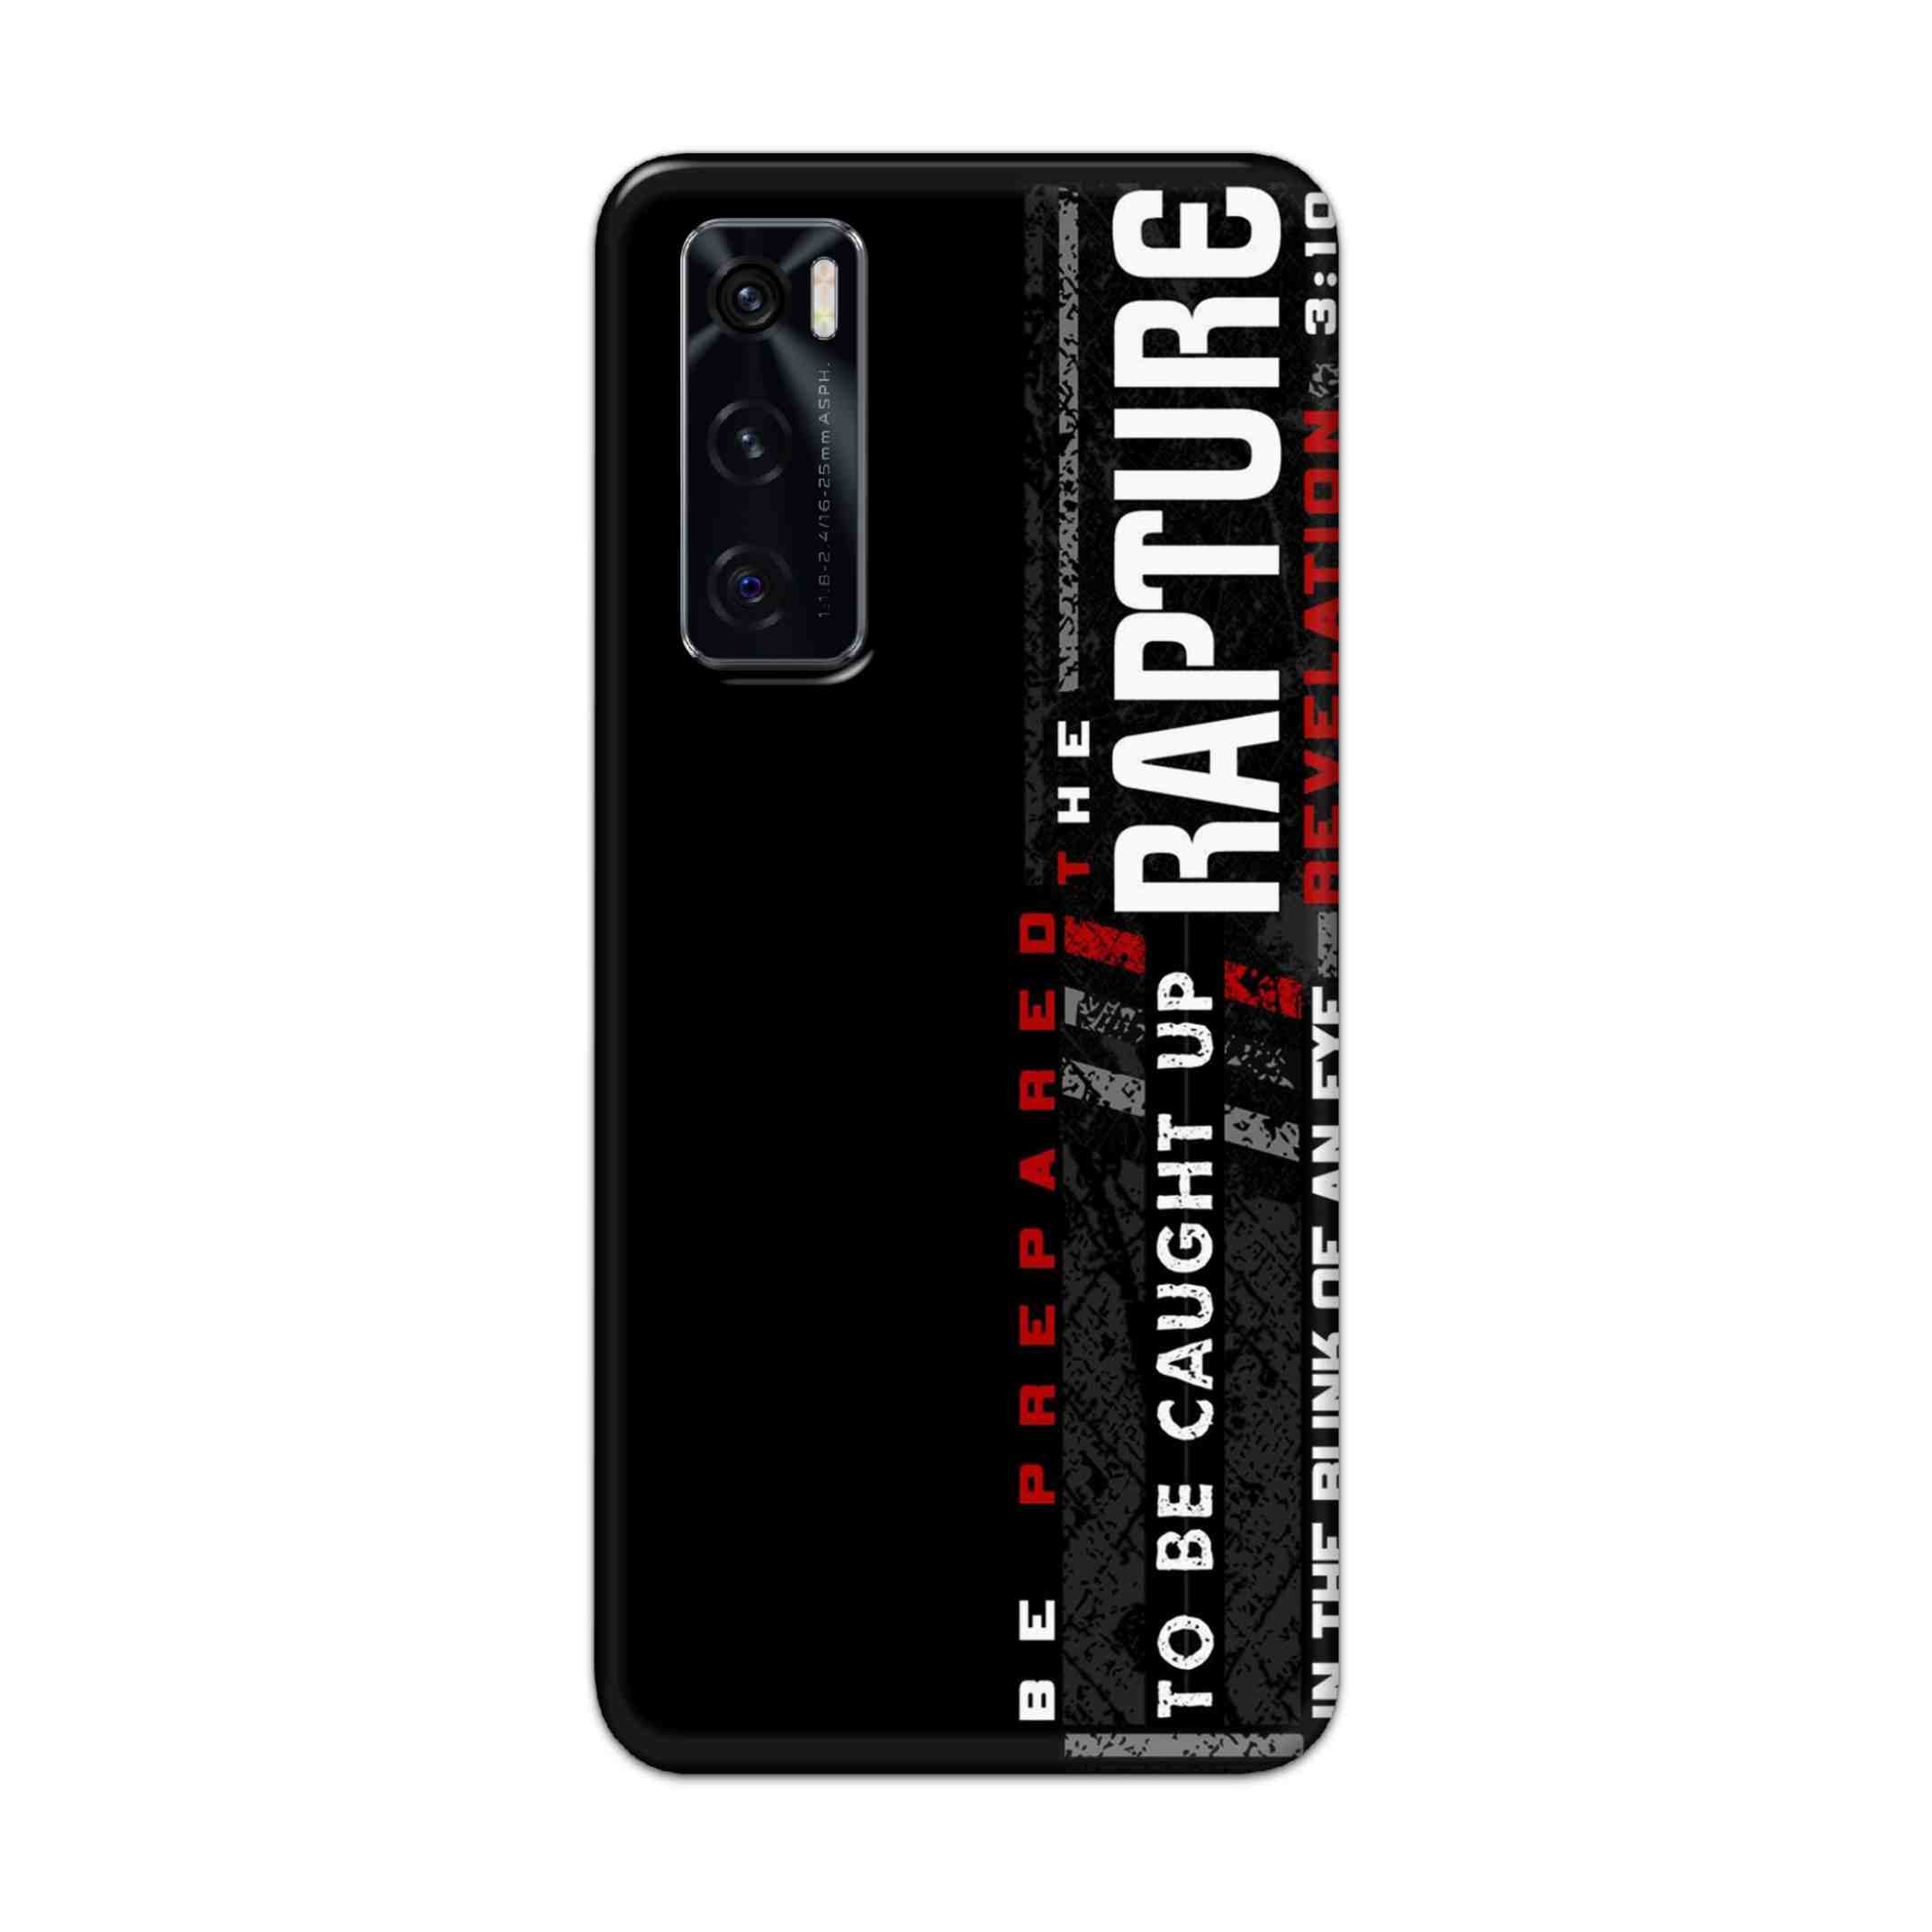 Buy Rapture Hard Back Mobile Phone Case Cover For Vivo V20 SE Online